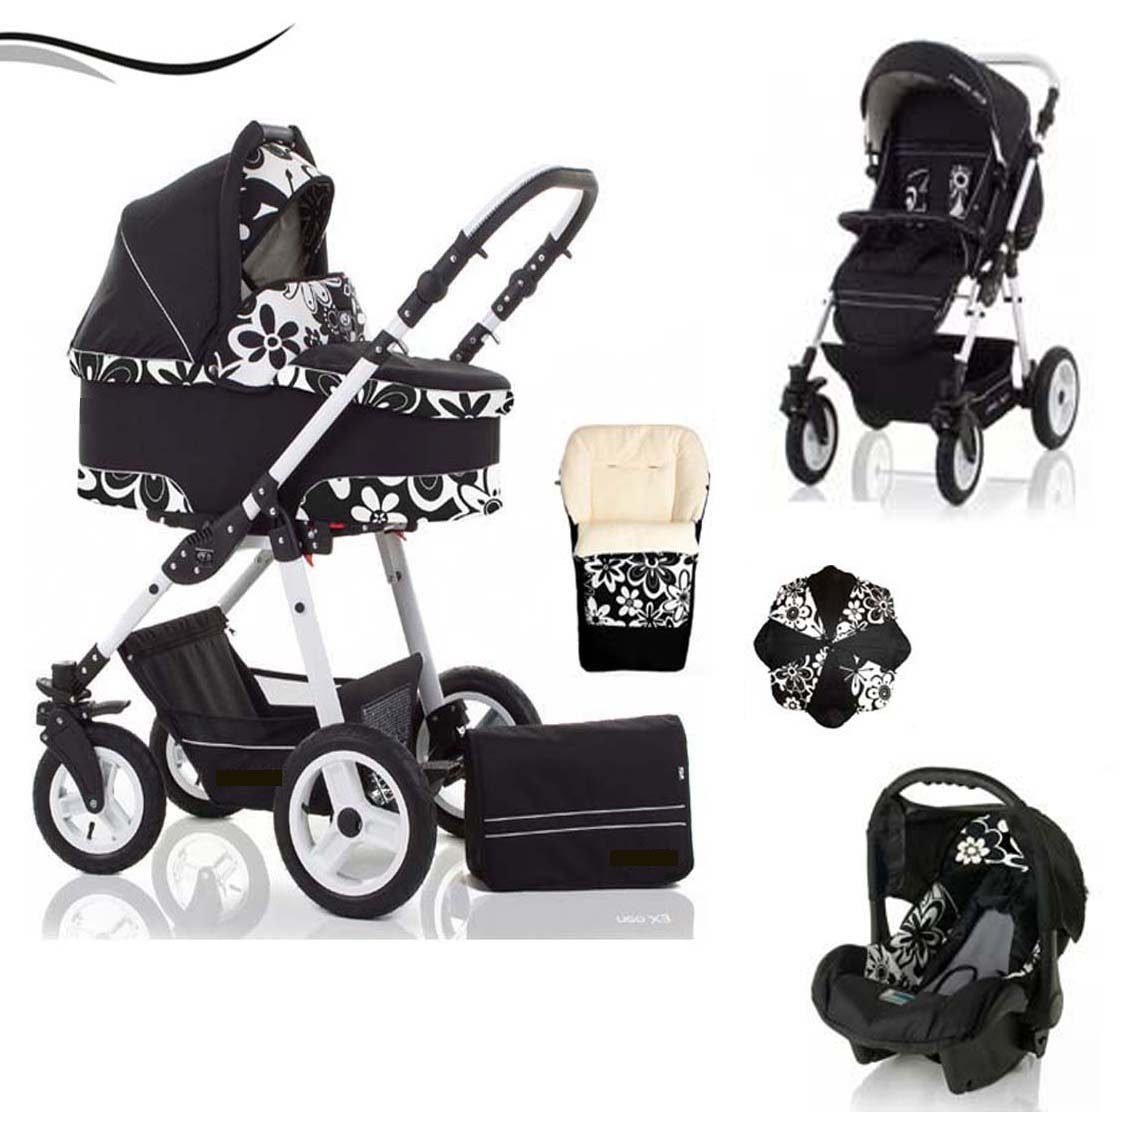 babies-on-wheels Kombi-Kinderwagen City Star 5 in 1 inkl. Autositz, Sonnenschirm und Fußsack - 18 Teile - von Geburt bis 4 Jahre in 16 Farben Schwarz-Blume